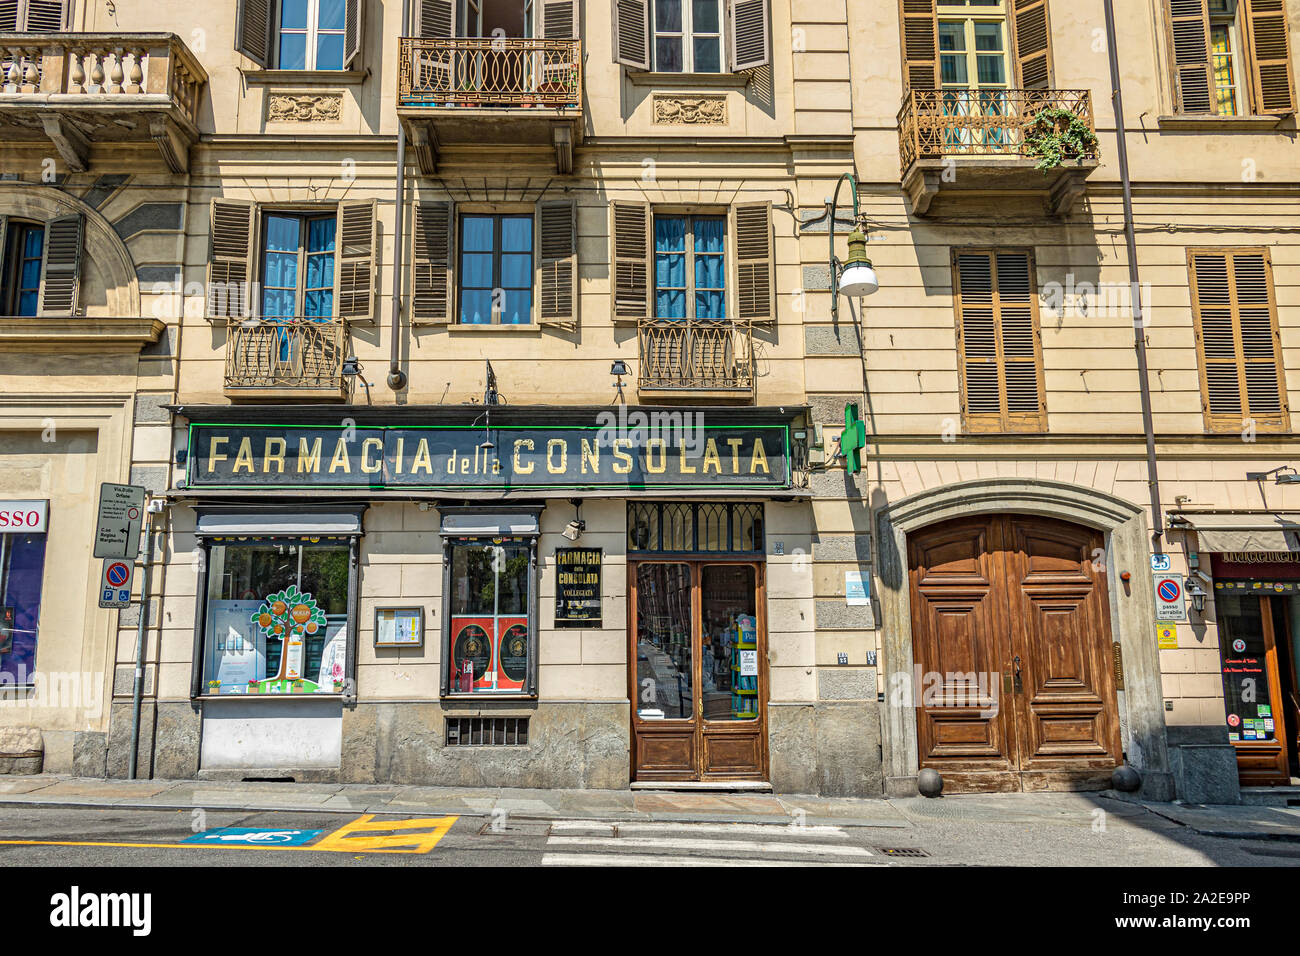 Farmacia della Consolata einer italienischen Apotheke auf der Via delle Orfanen, Turin, Italien Stockfoto